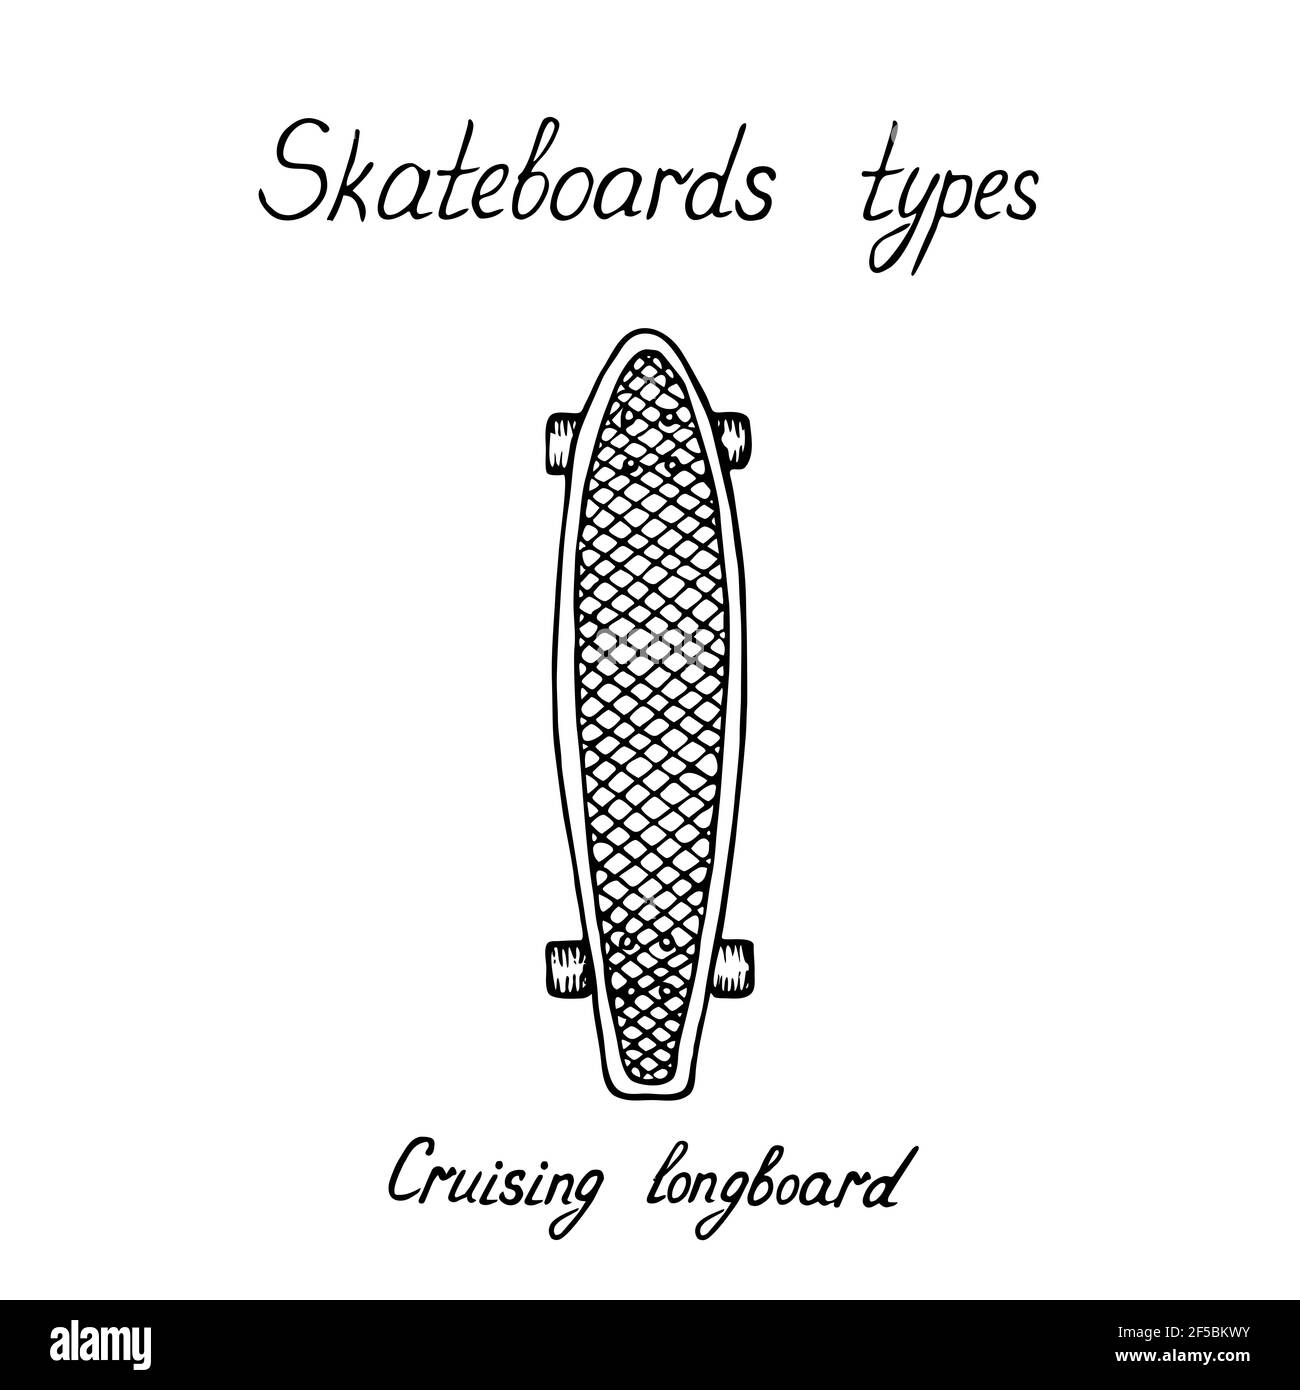 Skaeboard tipos, Cruising longboard, dibujo de negra de estilo de madera con inscripción manuscrita Fotografía de stock - Alamy